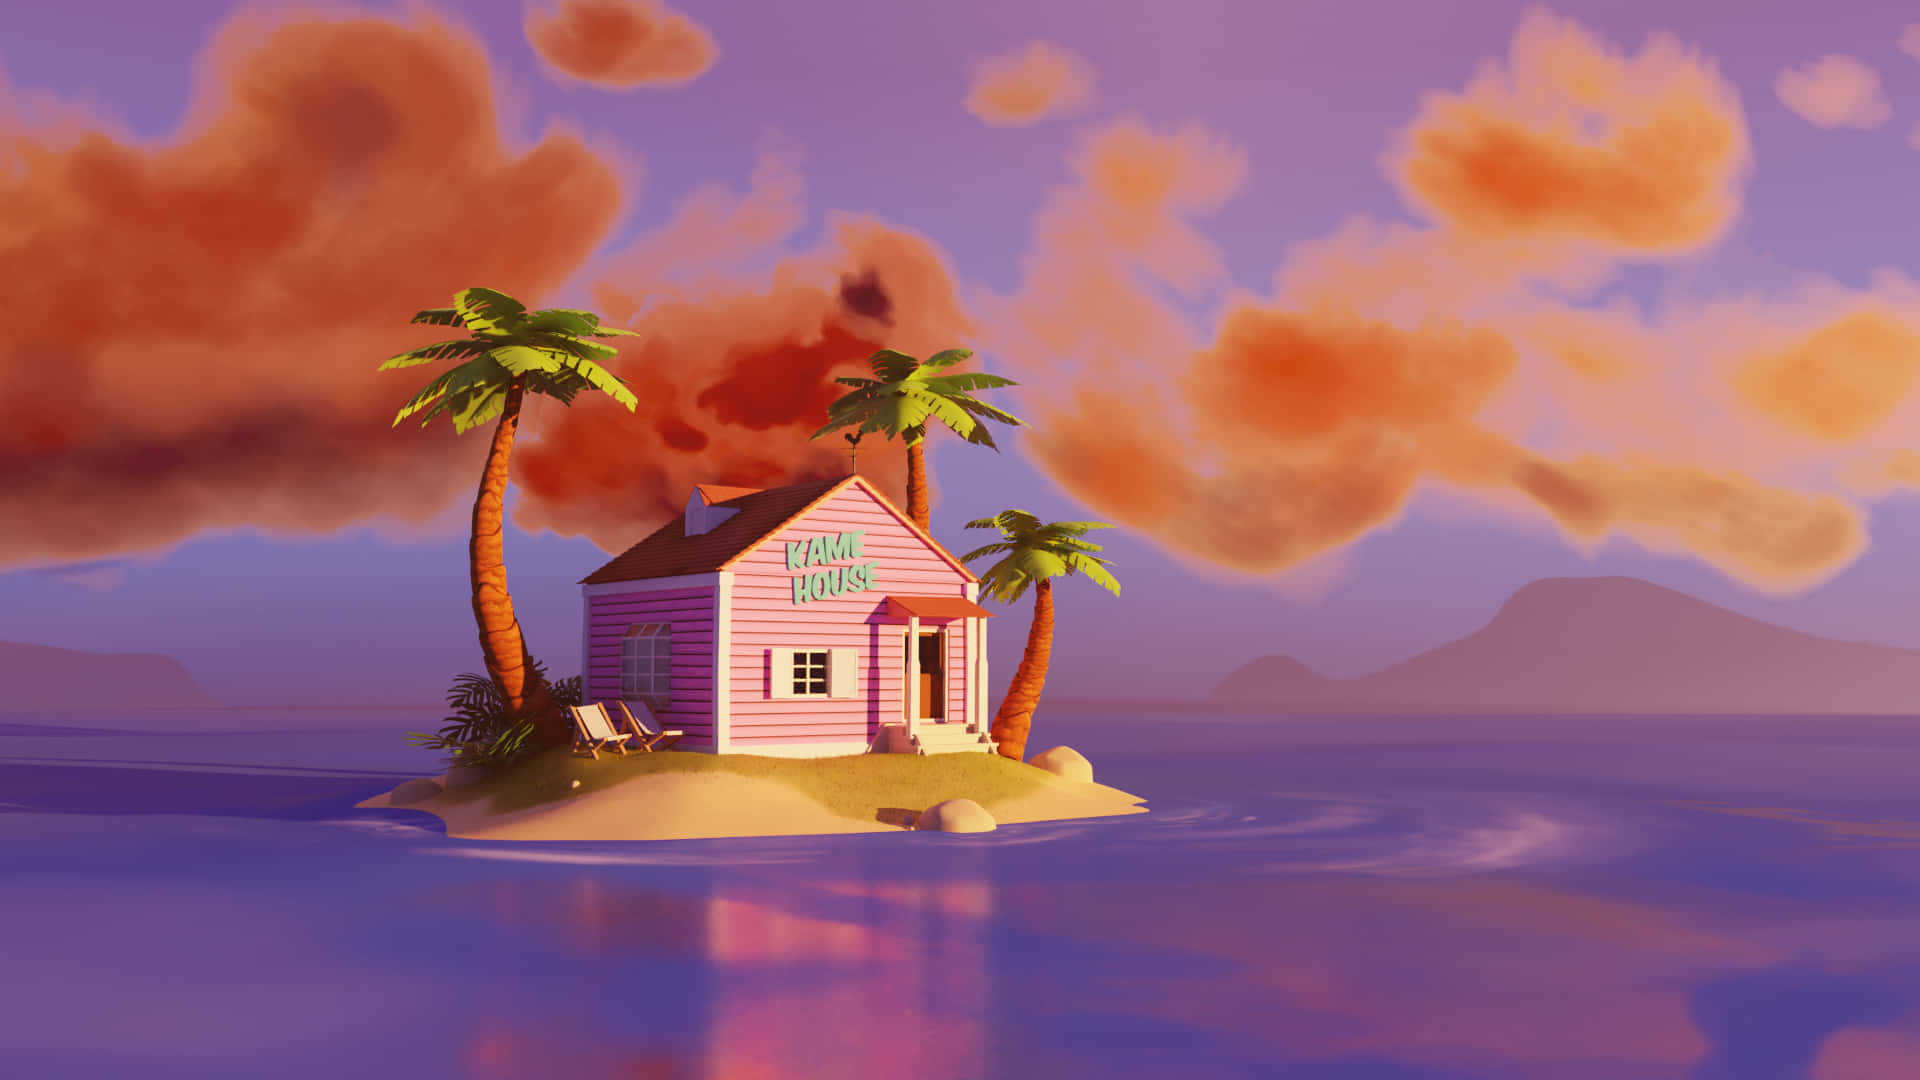 Einrosafarbenes Haus Auf Einer Insel Mit Palmen Wallpaper